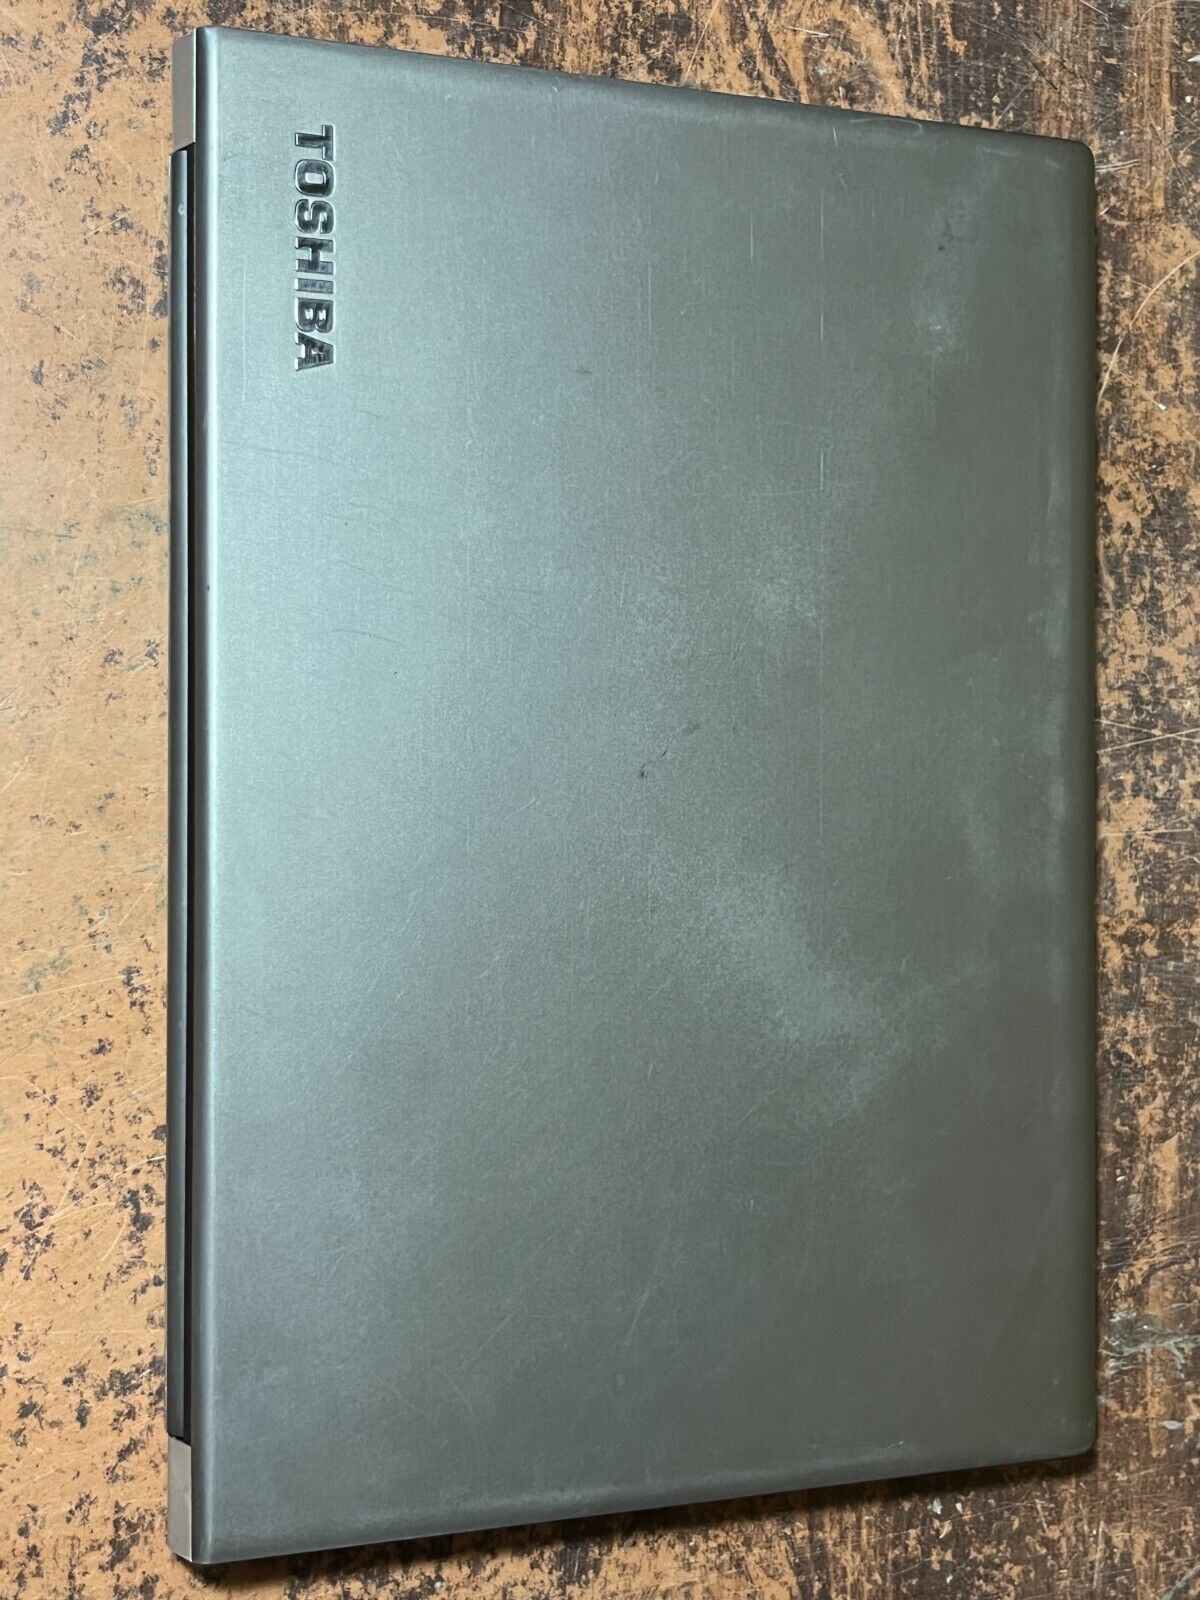 Toshiba Laptop Computer PC Z40 Windows 11 PRO i5-5300u 8GB 256GB 